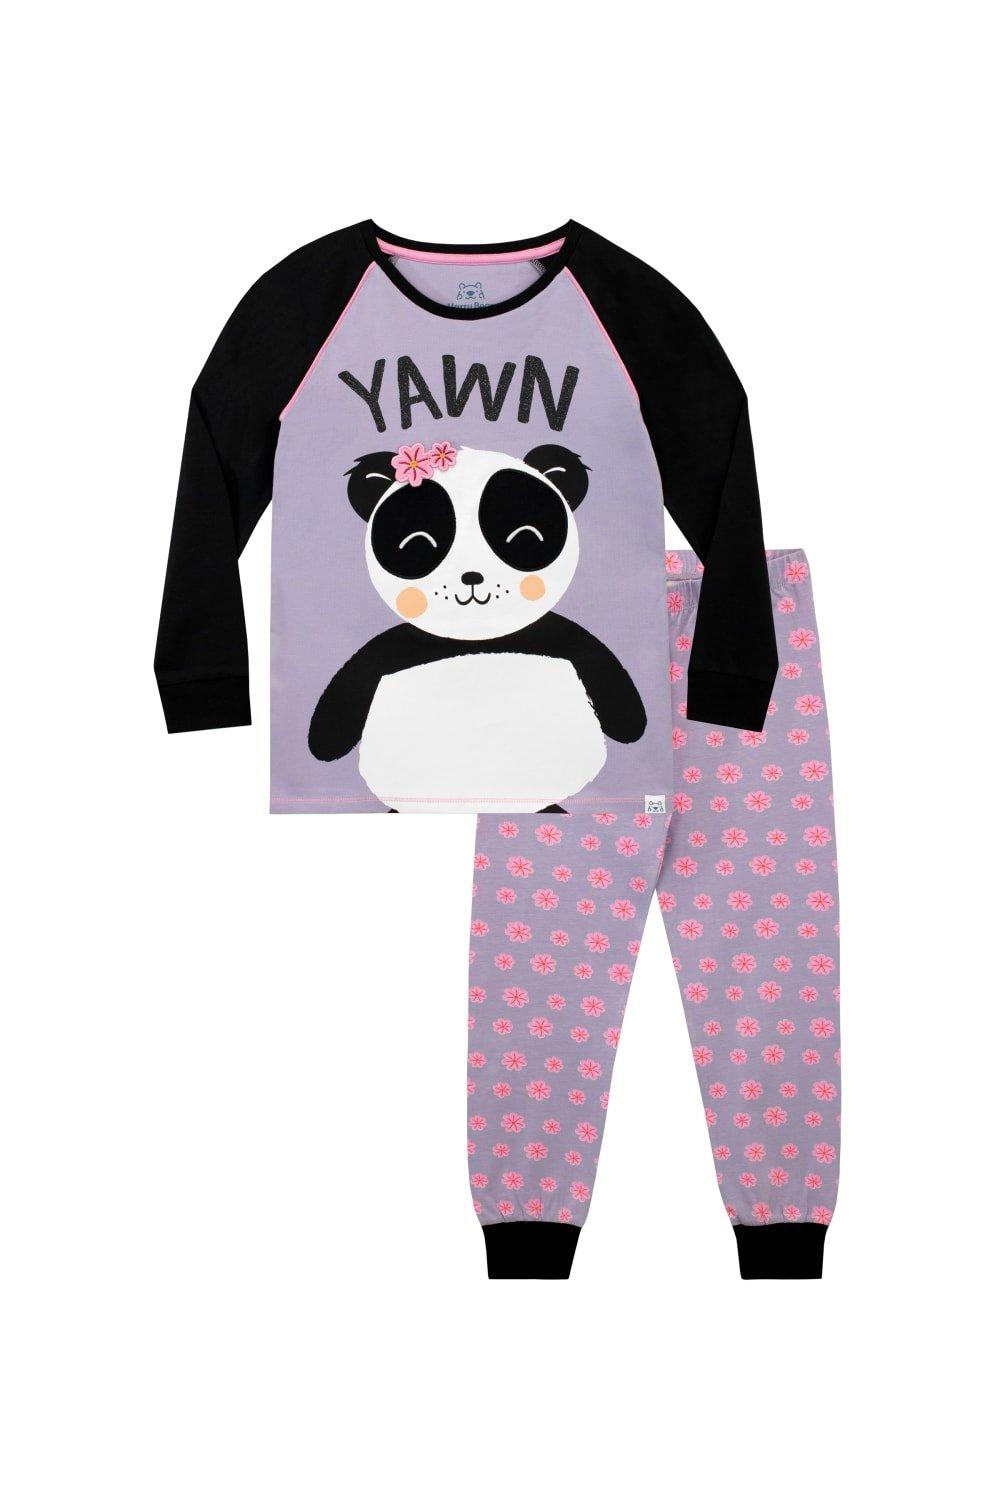 Yawn Panda Pyjamas